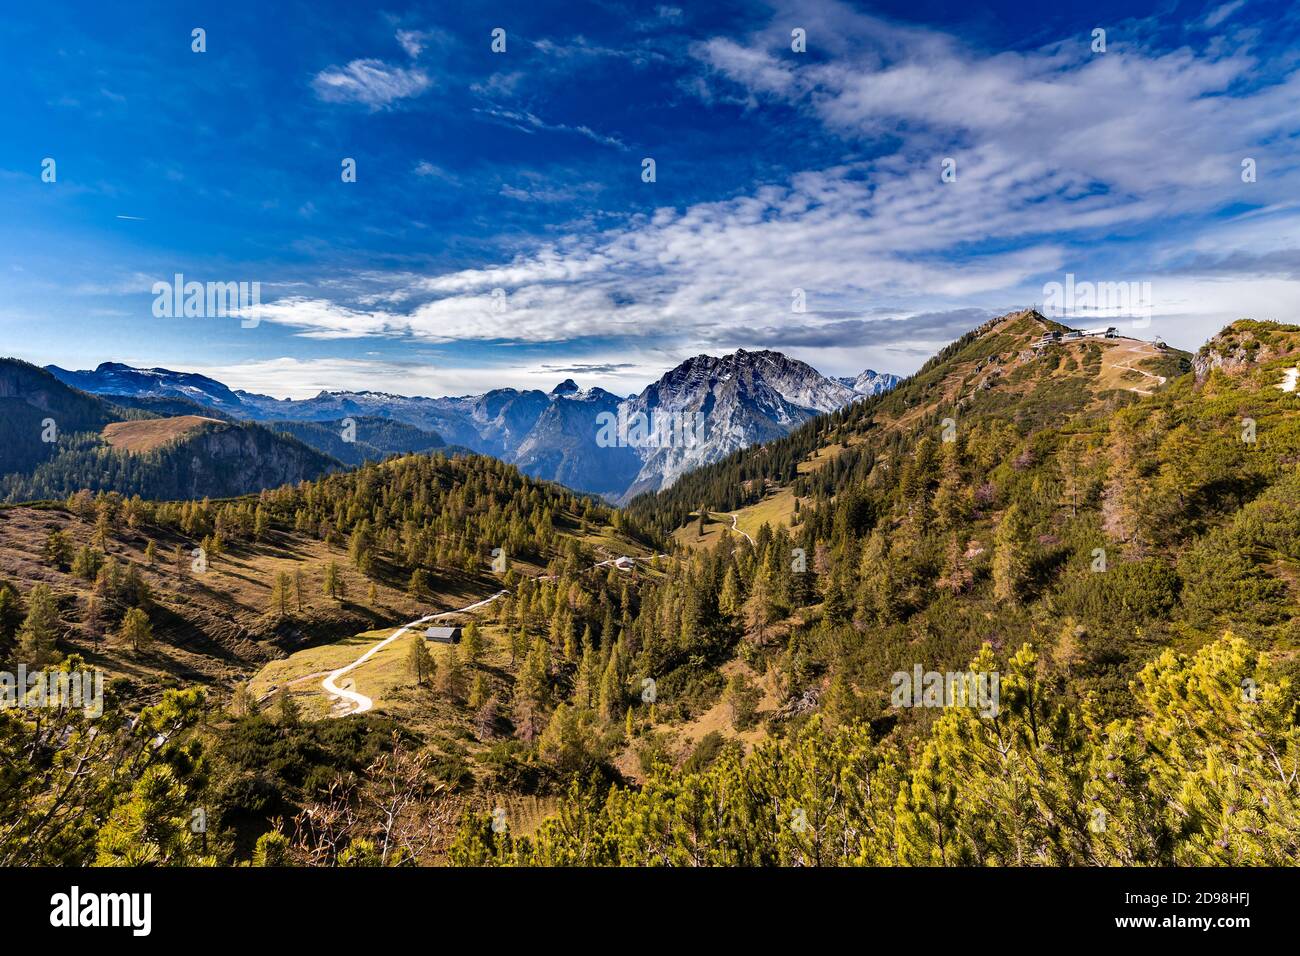 Blick vom Hagengebirge in Richtung Watzmann im Berchtesgadener Land, Bayern, Deutschland, im Herbst. Stockfoto